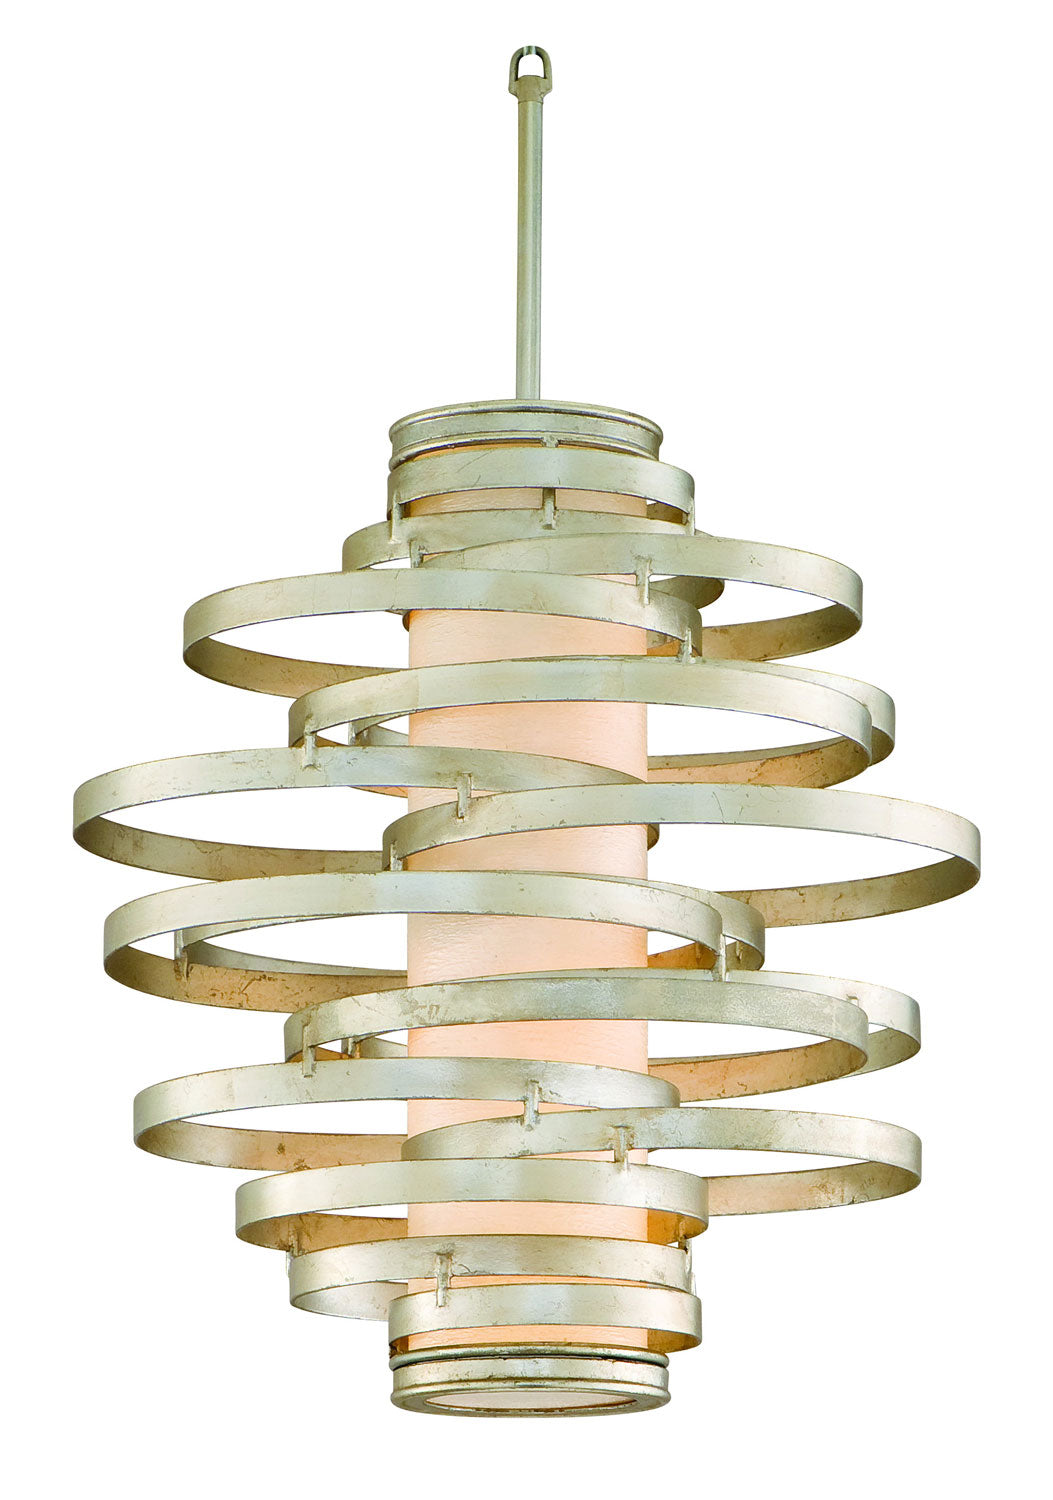 Corbett Lighting - Two Light Pendant - Vertigo - Modern Silver Leaf- Union Lighting Luminaires Decor